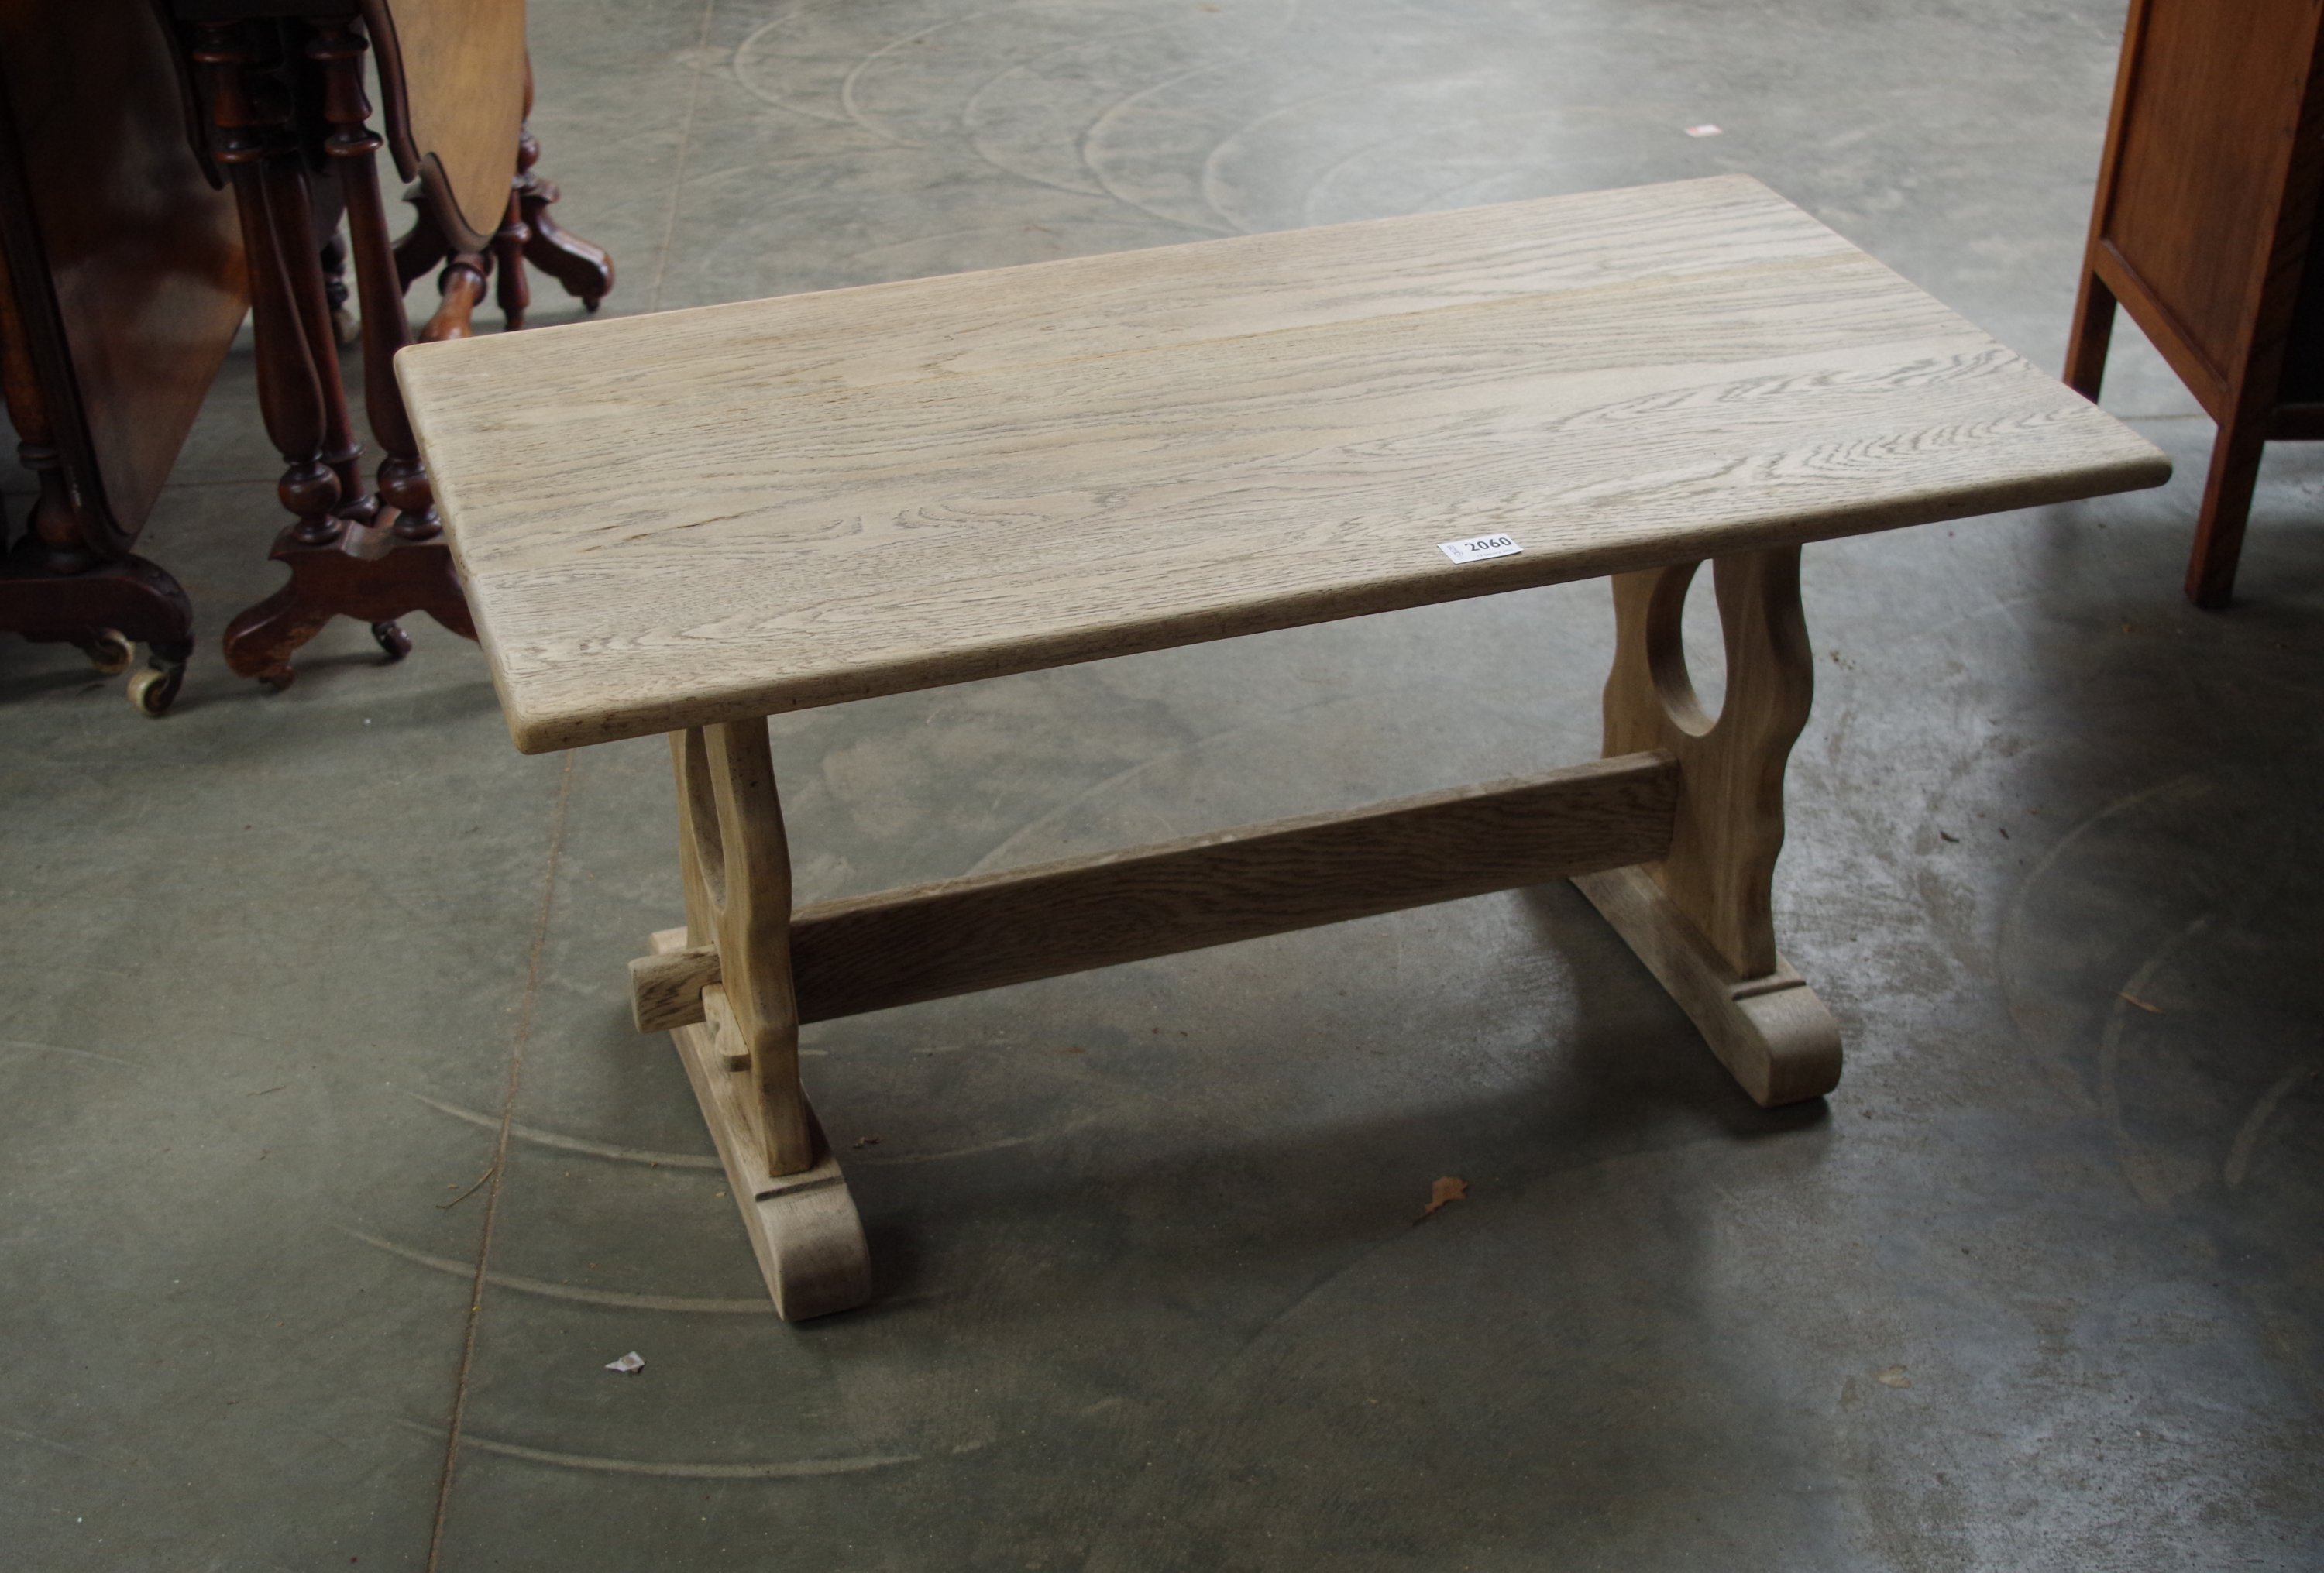 A stripped oak coffee table